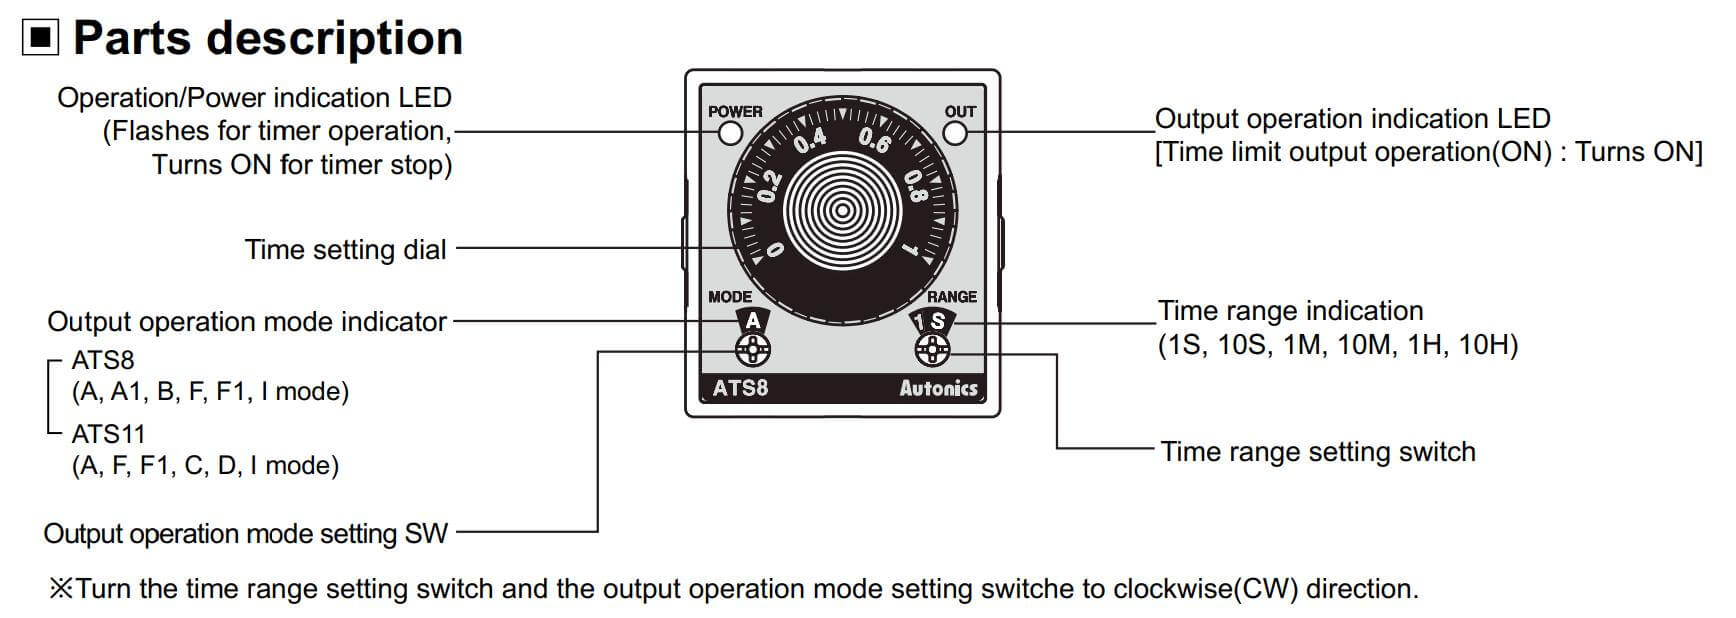 Cấu tạo và Kích thước Autonics ATS11-21D: Bộ định thời gian (Timer)